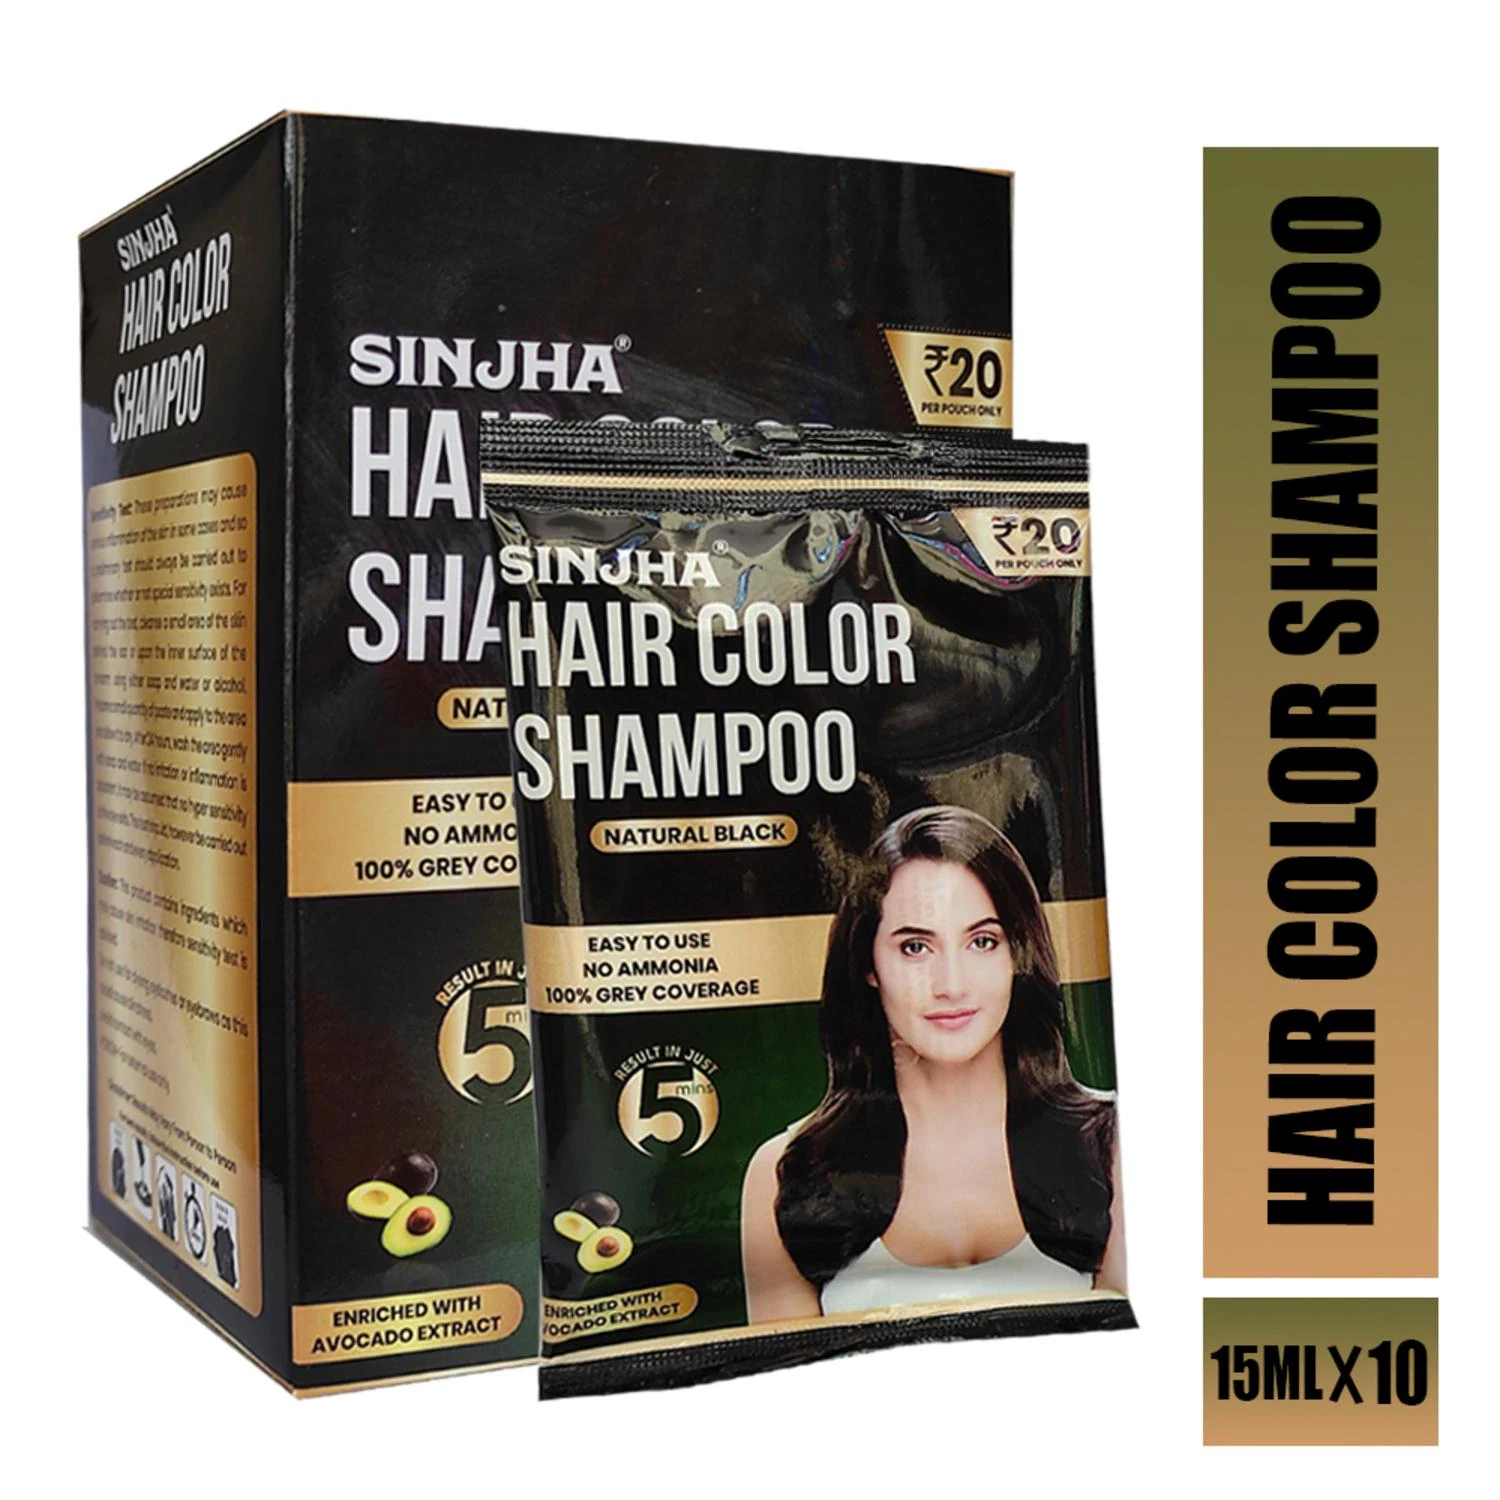 SINJHA Hair Color Shampoo - Natural Black Pack Of 1 - JioMart